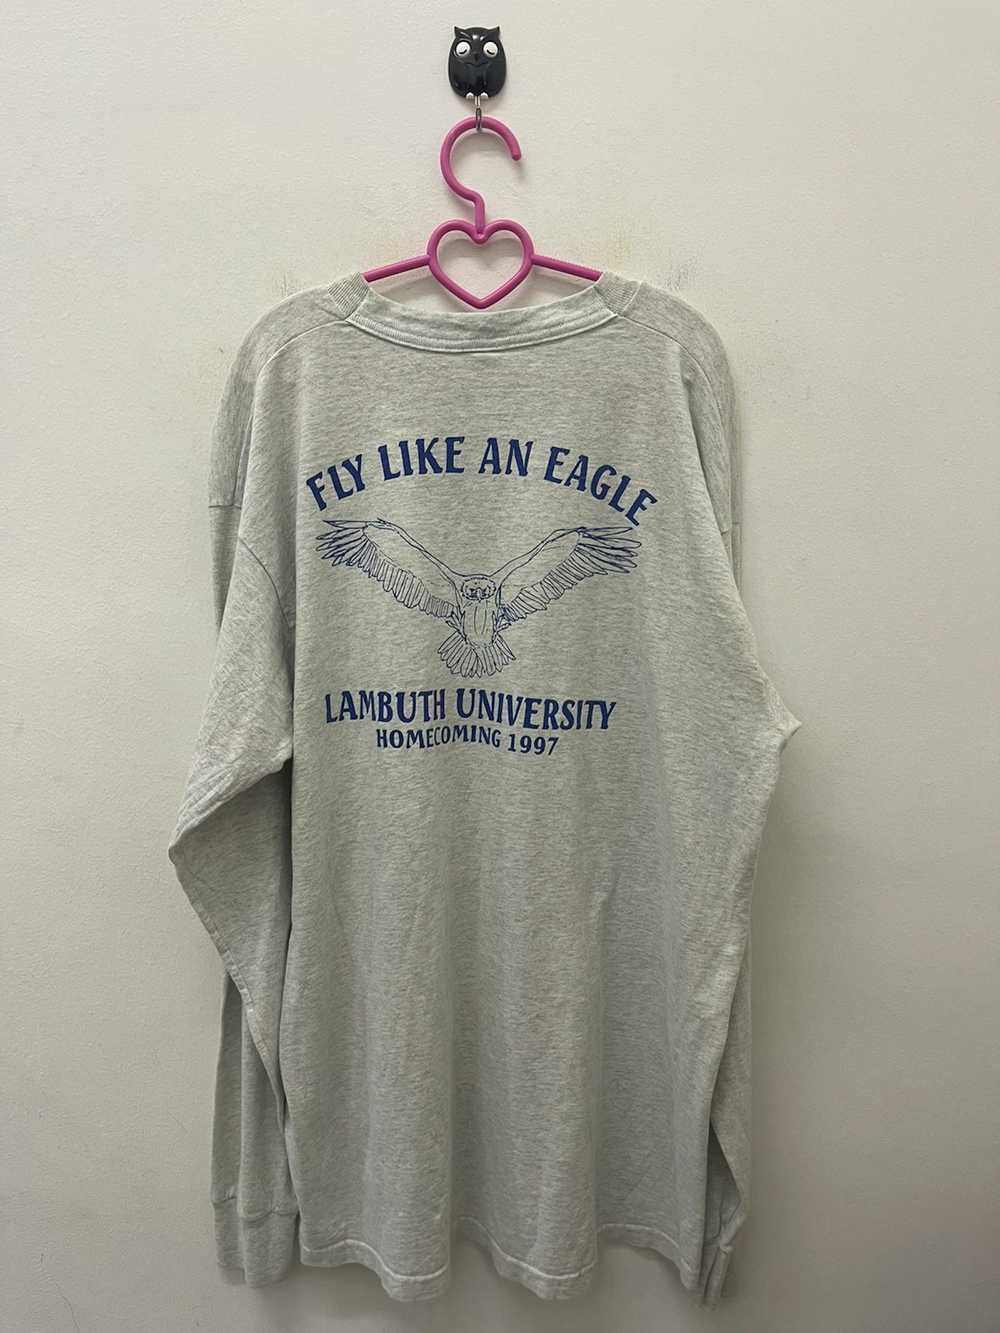 American College × Collegiate × Made In Usa Rare … - image 1